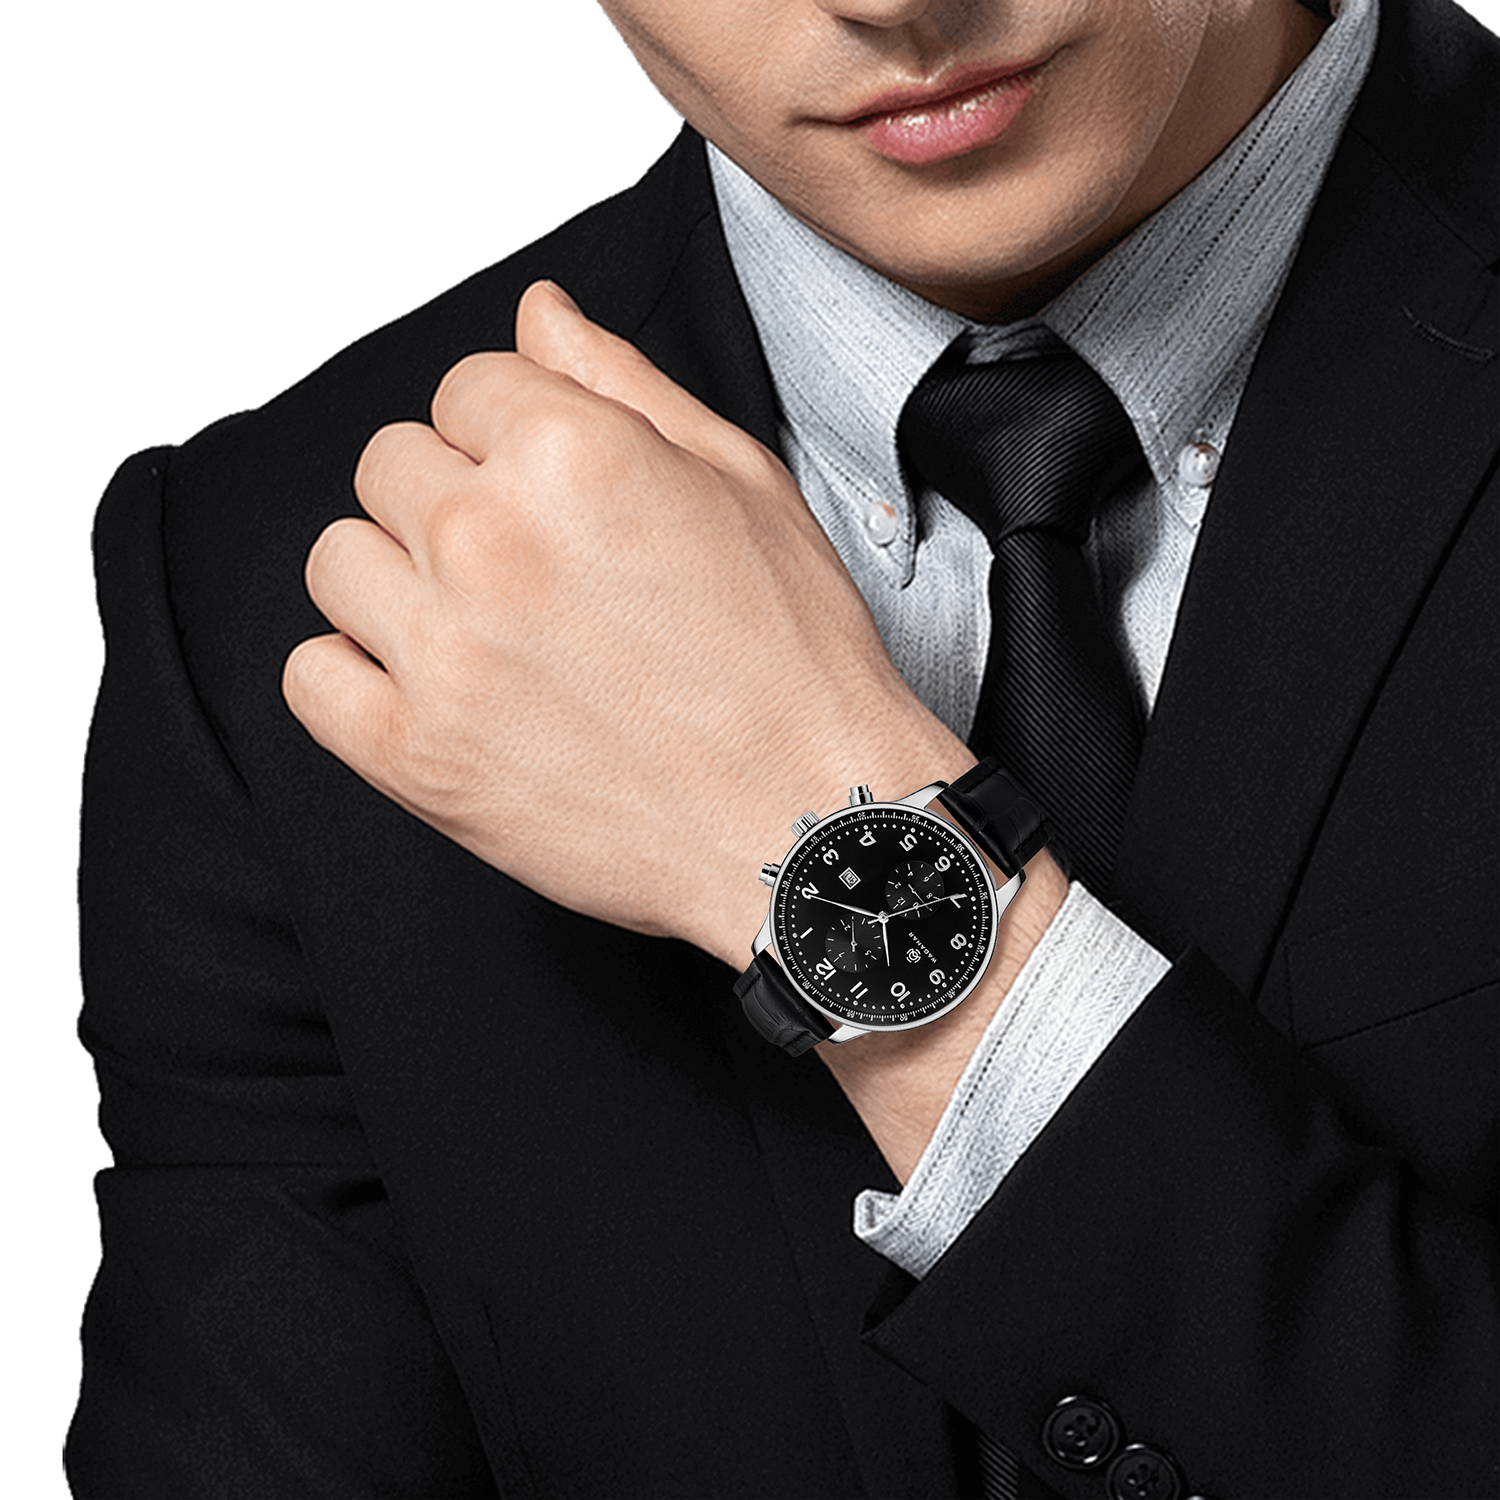 不锈钢手表-JY-AL158不锈钢手表-JY-AL158多少钱 不锈钢手表-JY-AL158报价 不锈钢手表-JY-AL158怎么卖